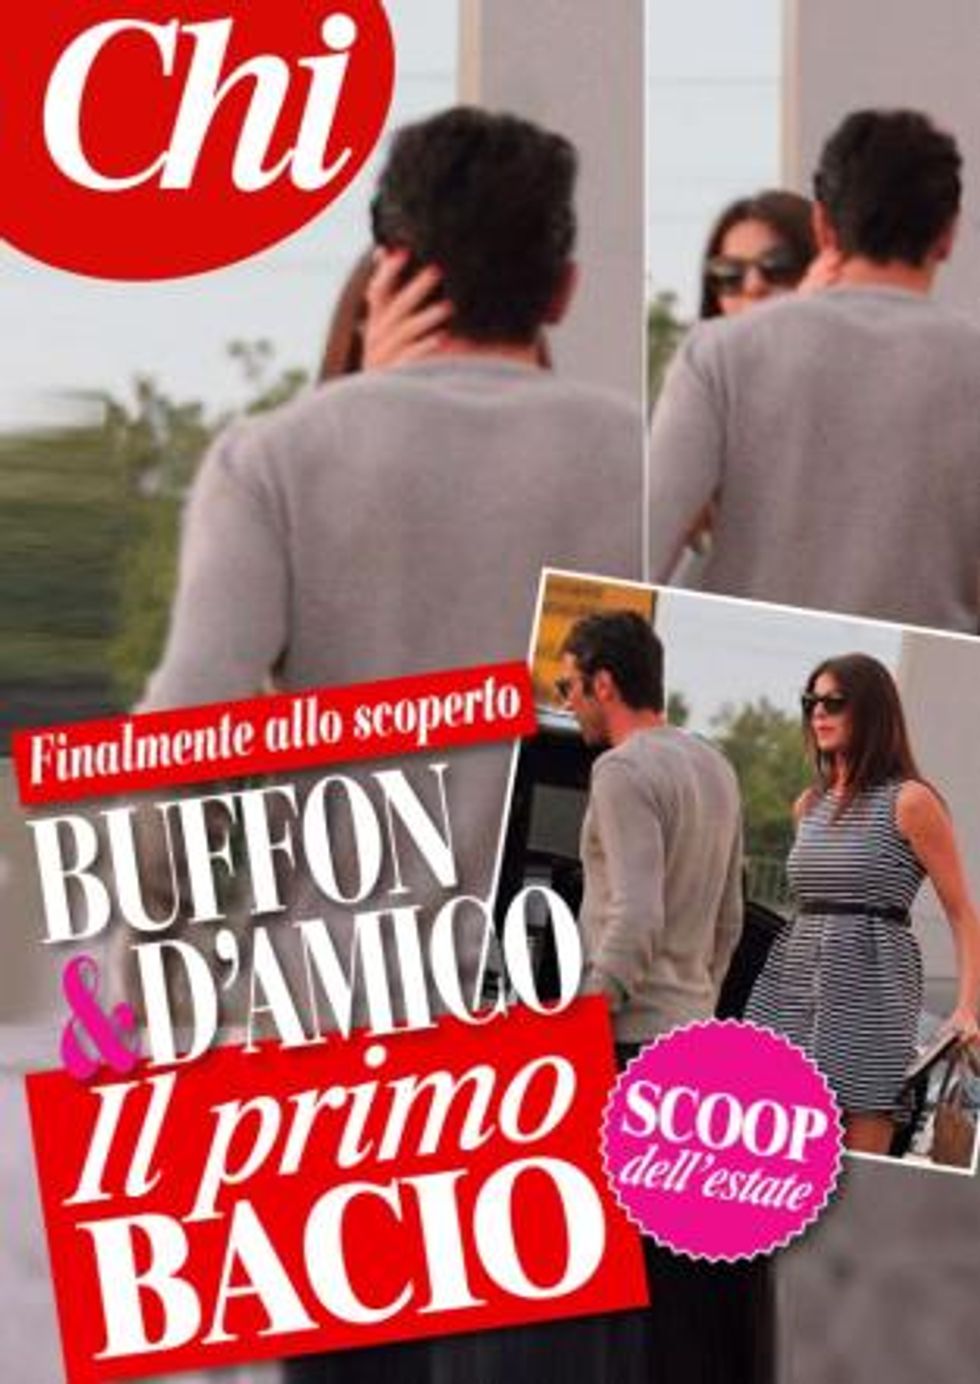 Gigi Buffon e Ilaria D'Amico: c'è la foto del bacio